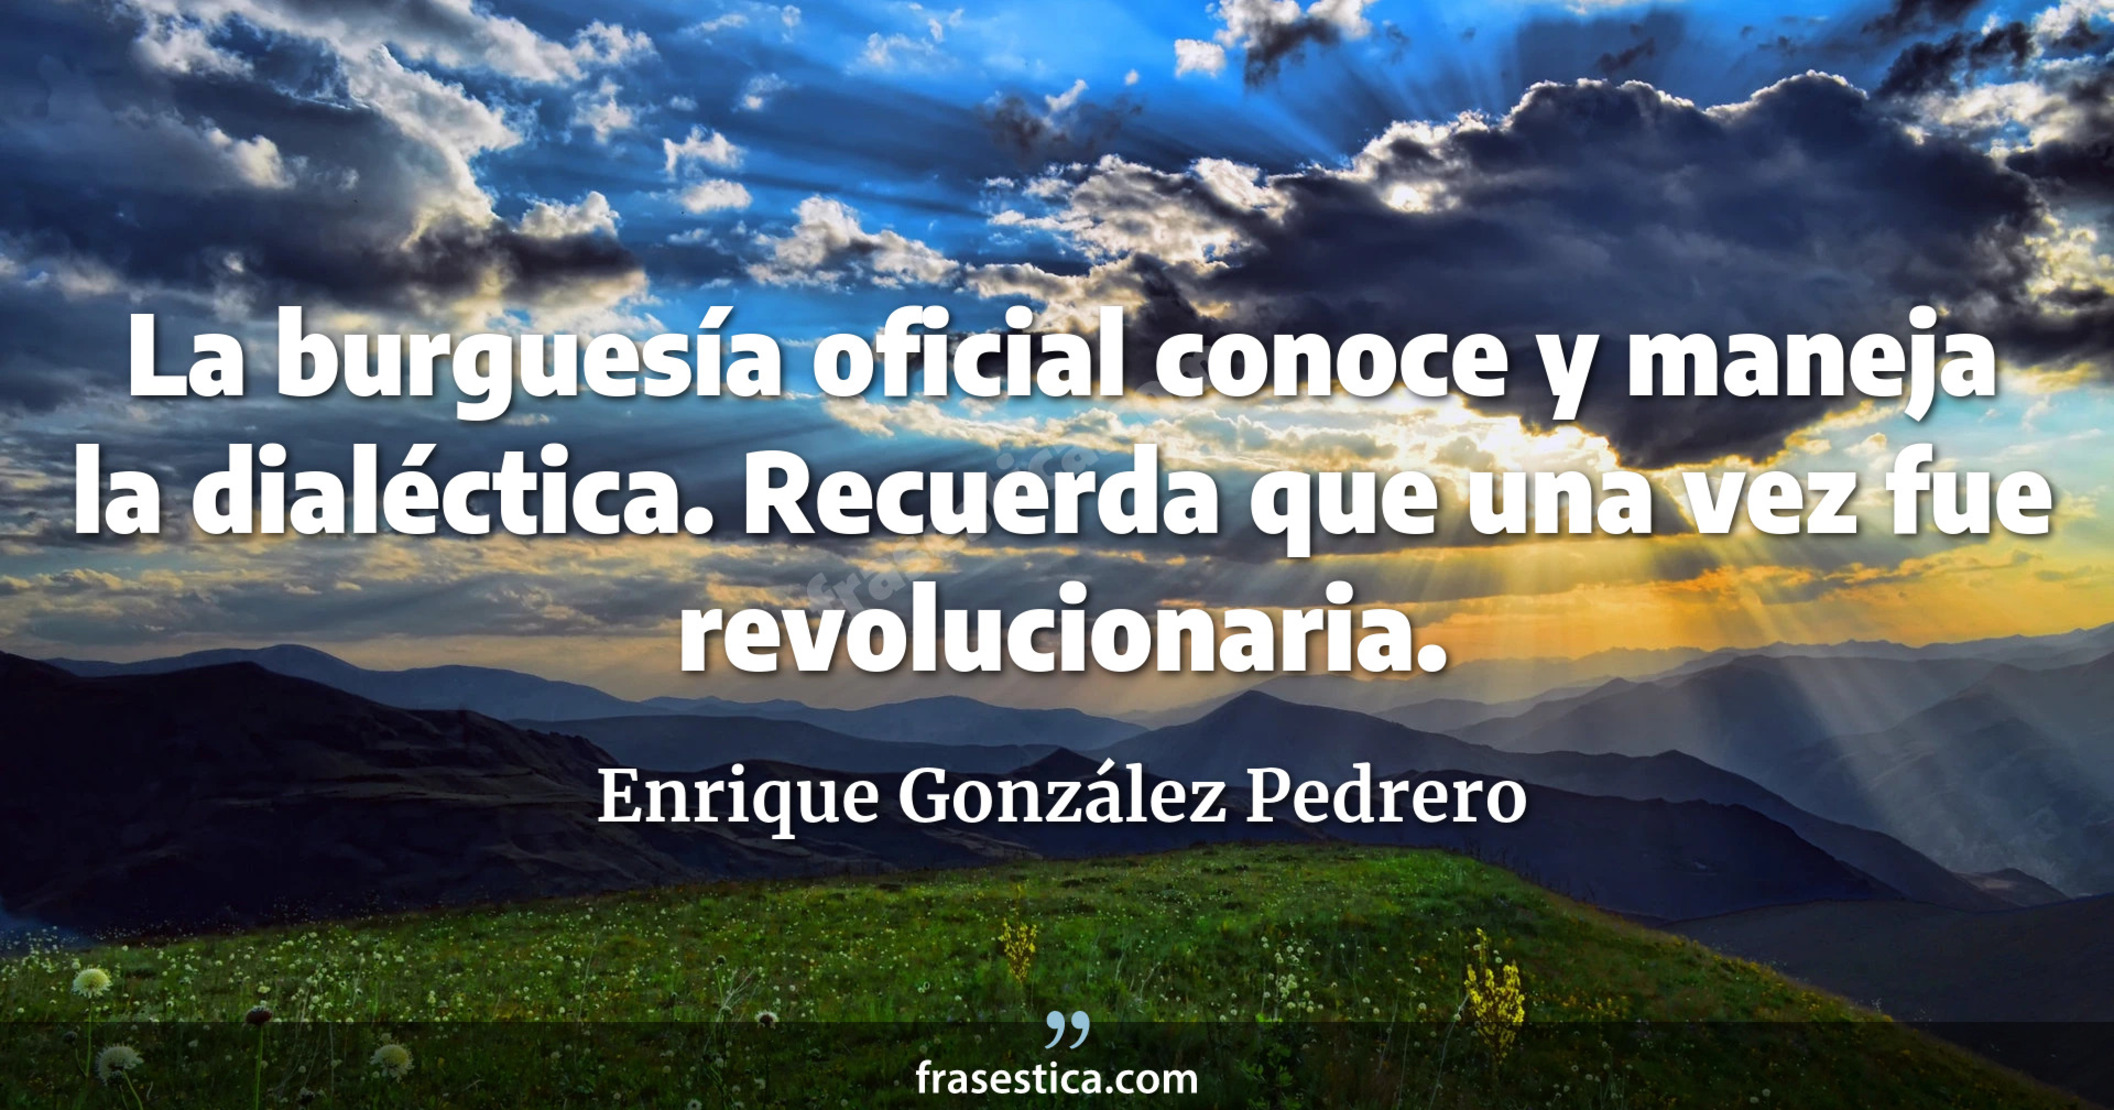 La burguesía oficial conoce y maneja la dialéctica. Recuerda que una vez fue revolucionaria. - Enrique González Pedrero